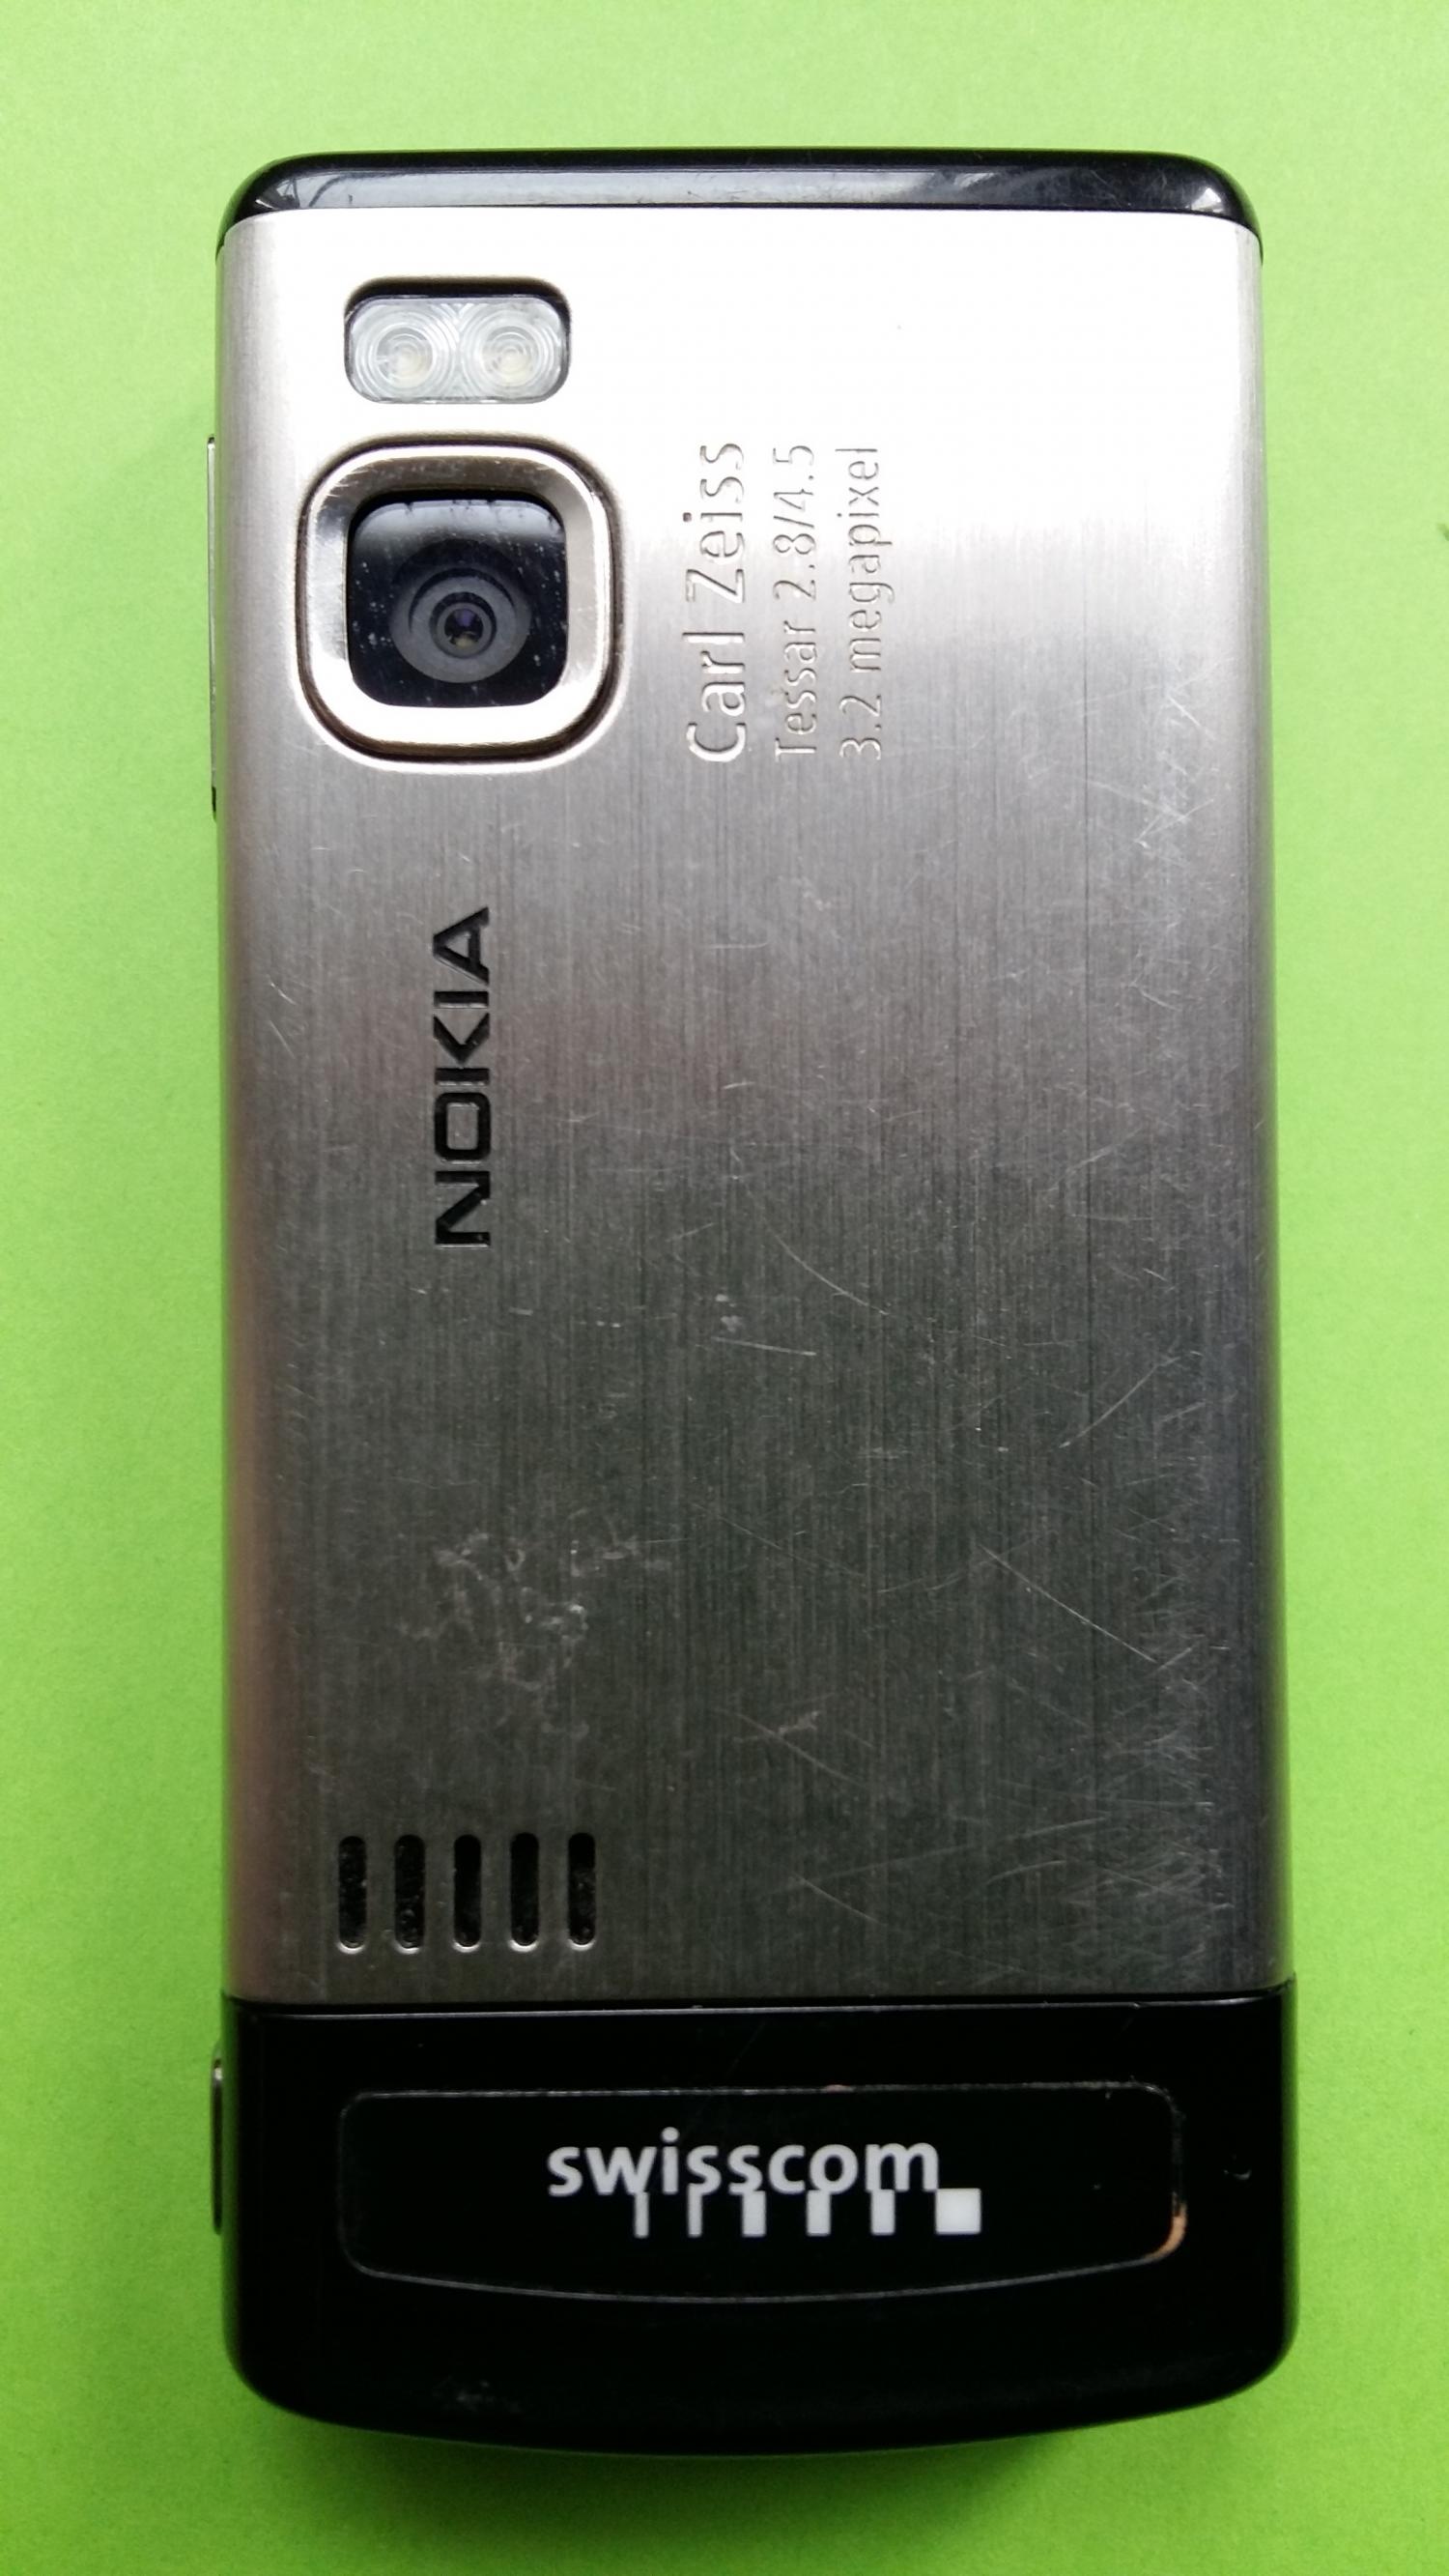 image-7325315-Nokia 6500S-1 (5)3.jpg